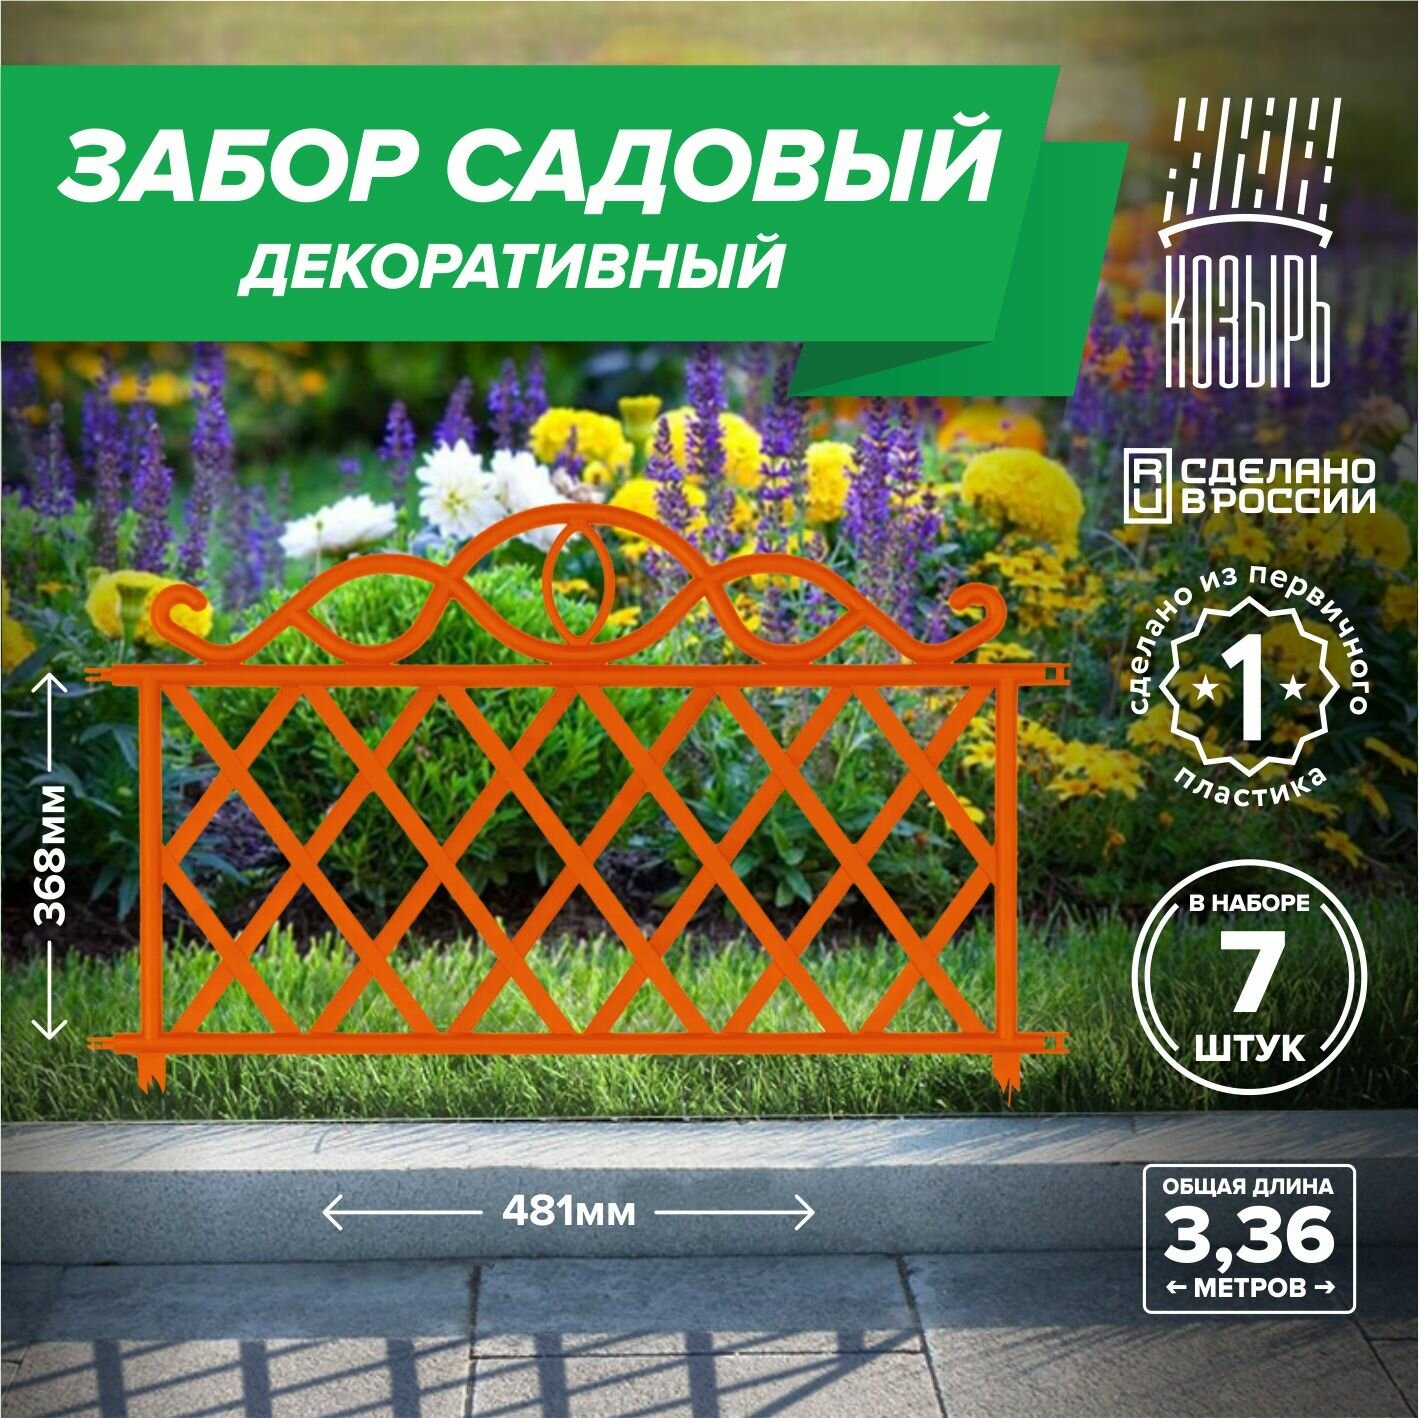 Декоративный садовый забор 481см х 11 шт общая длина: 5291 м ограждение для цветника и клумбы для дачи и сада оранжевый Россия